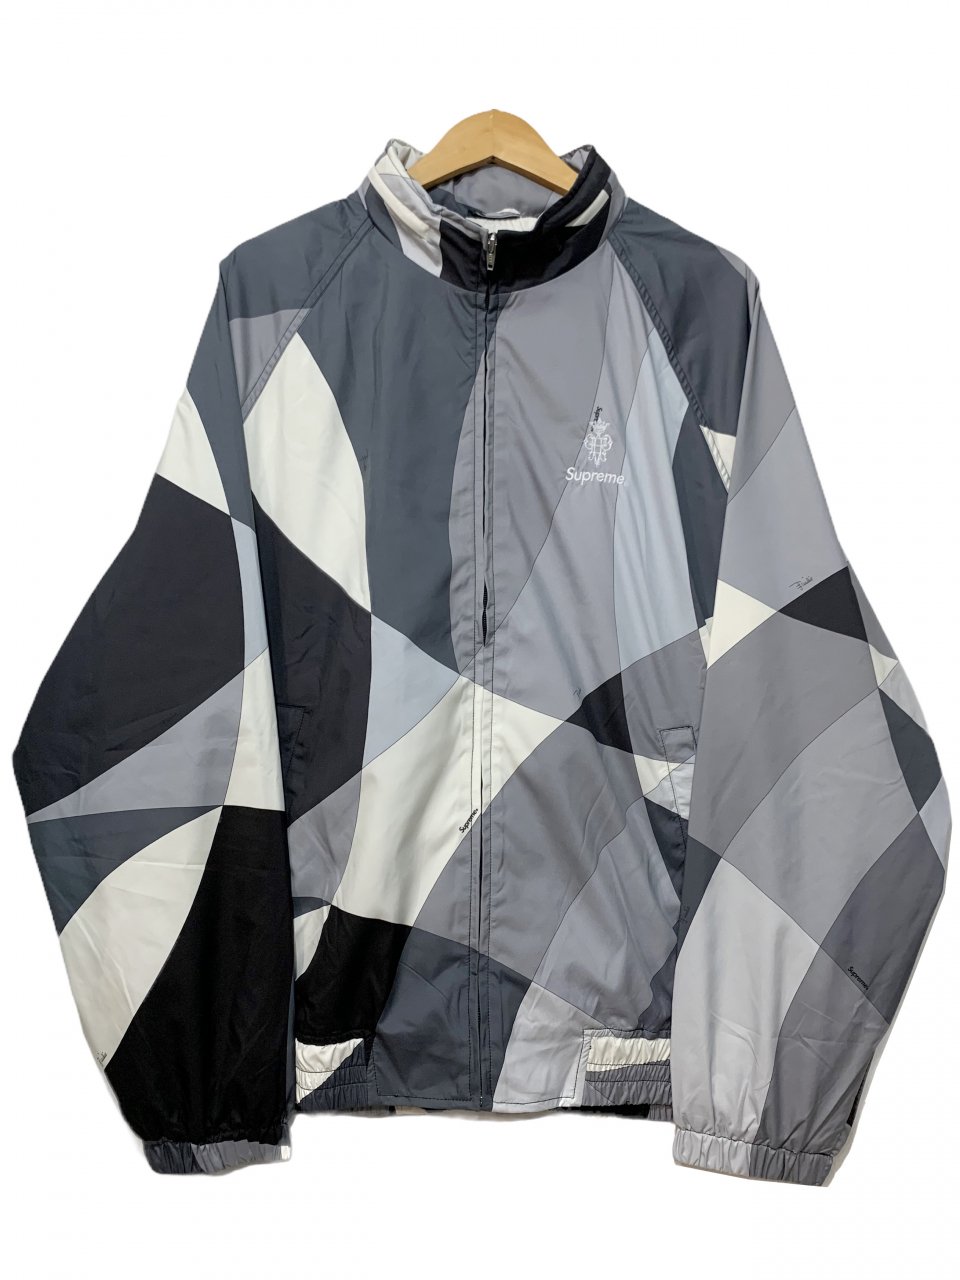 新品 21SS SUPREME × Emilio Pucci Sport Jacket 黒 XL シュプリーム